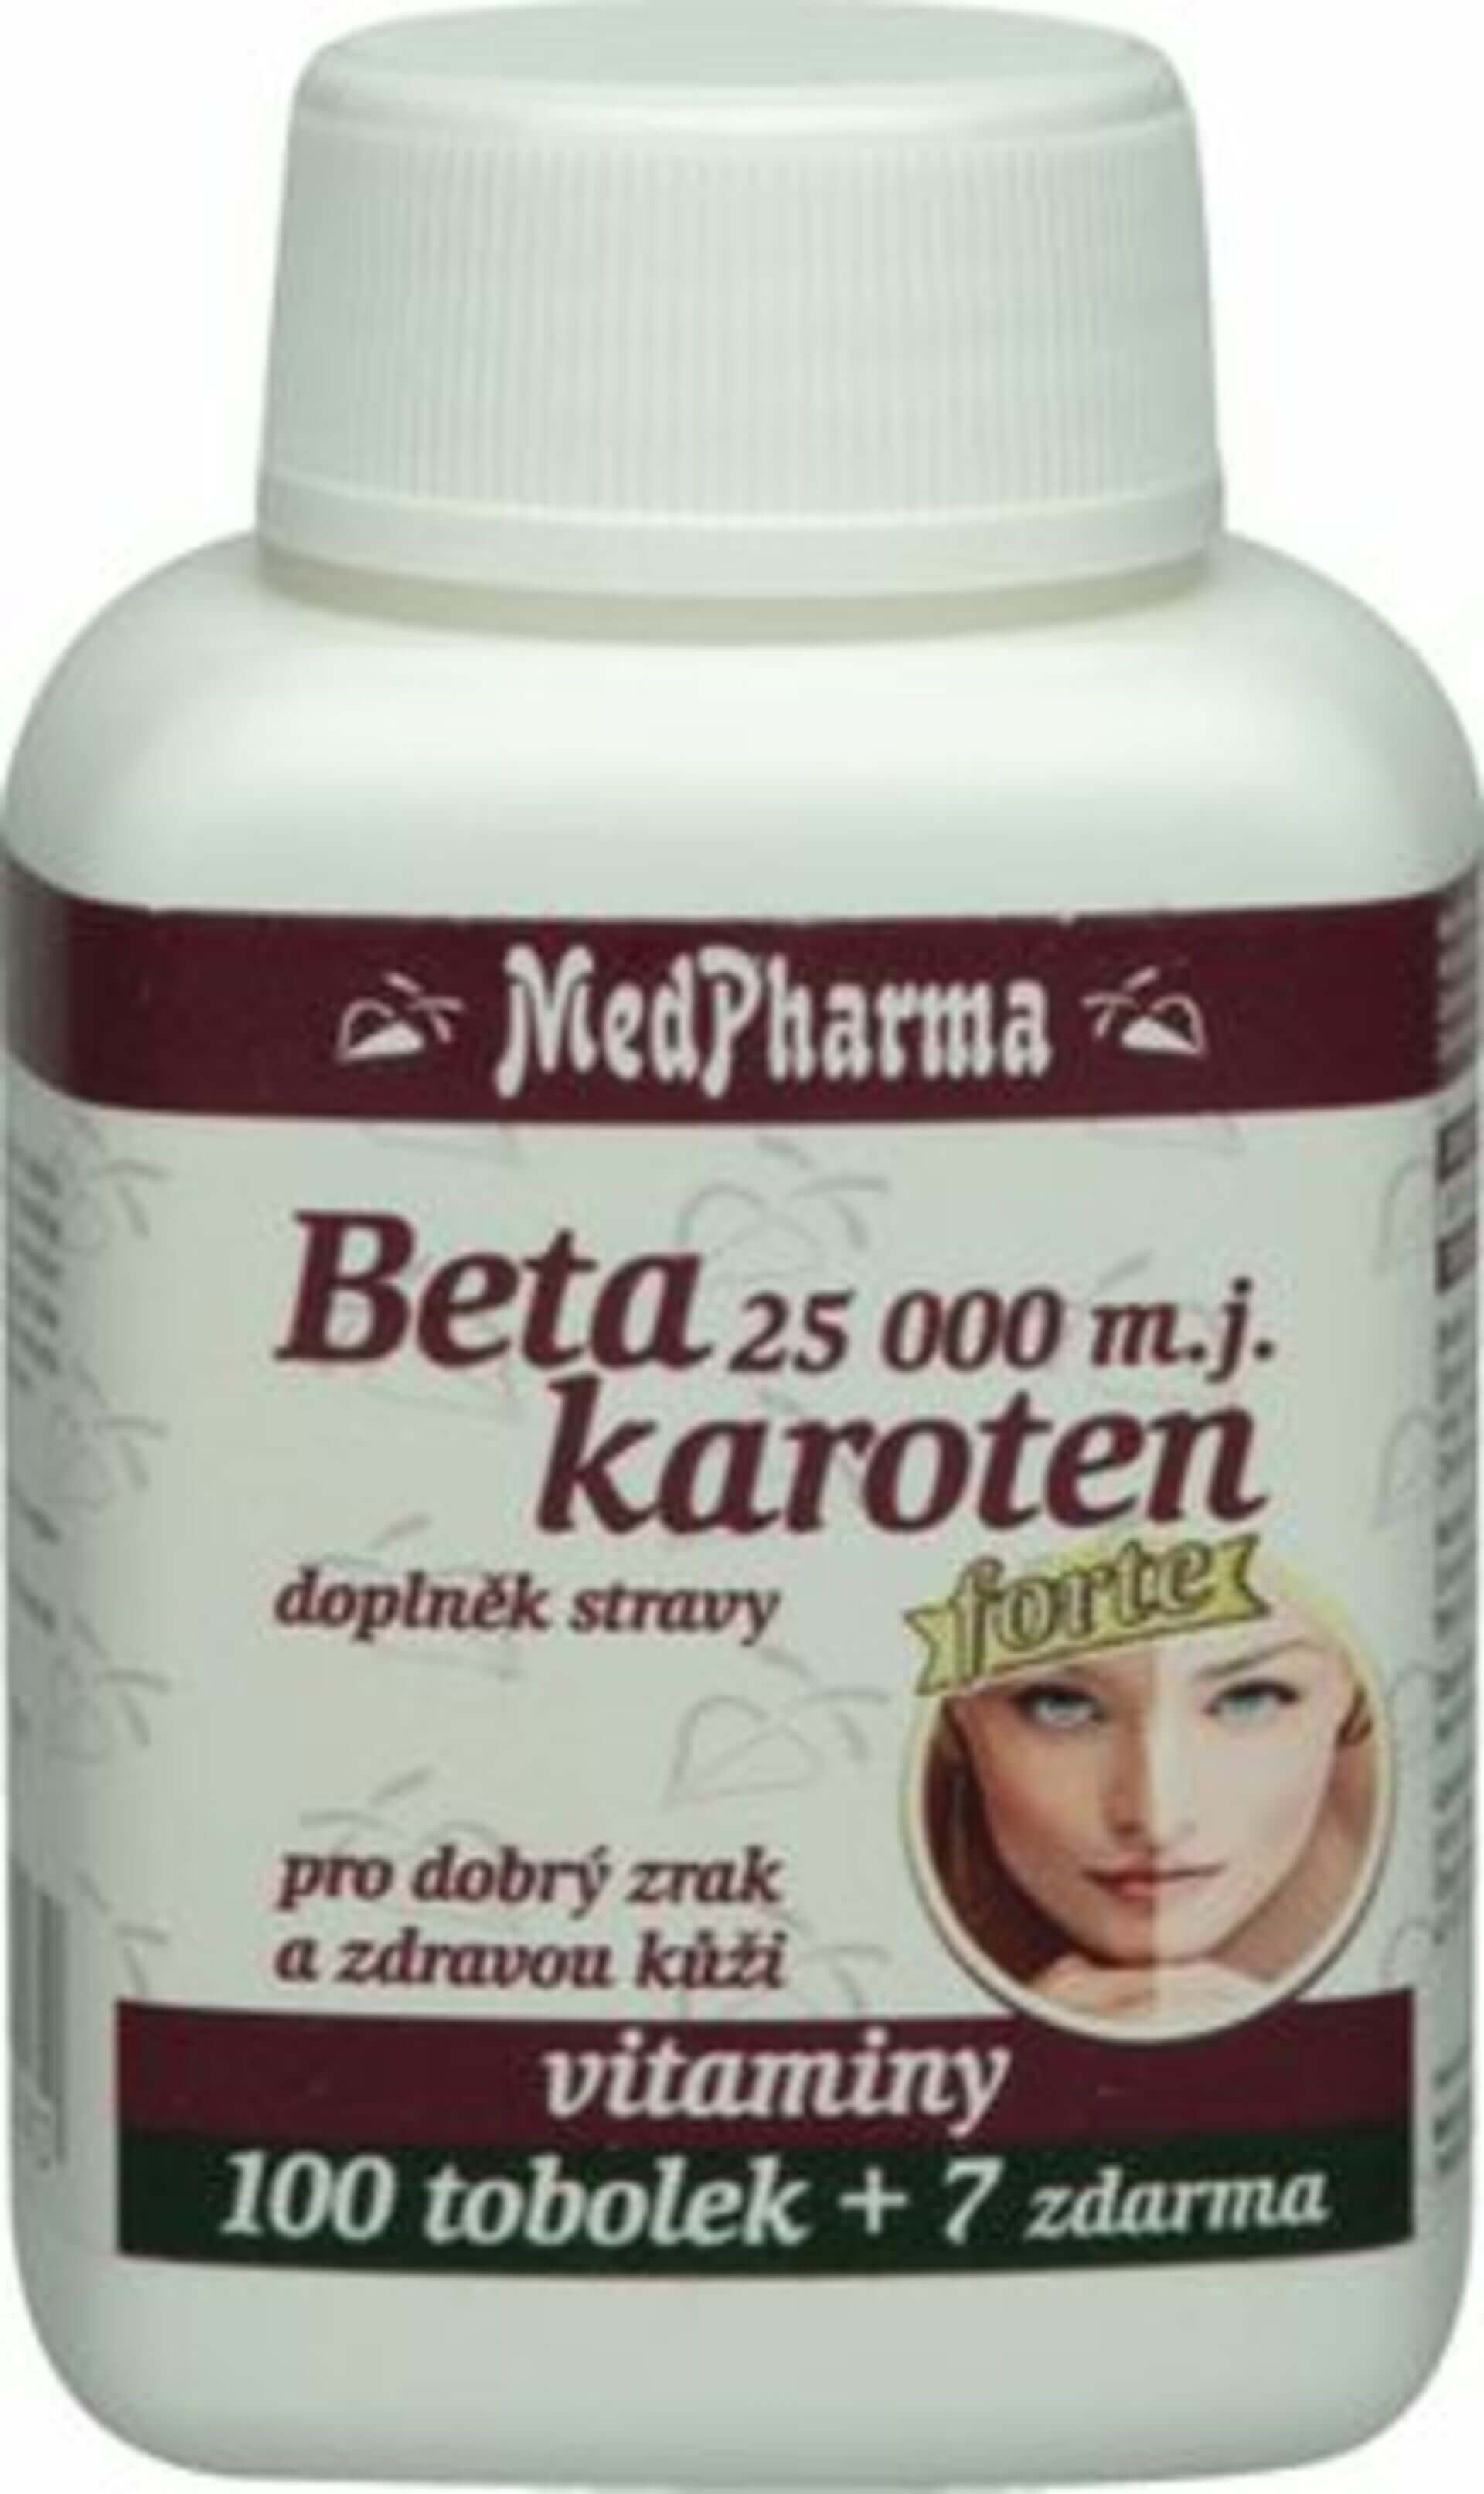 Levně MedPharma Beta karoten 10.000 m.j. panthenol+PABA 107 tablet